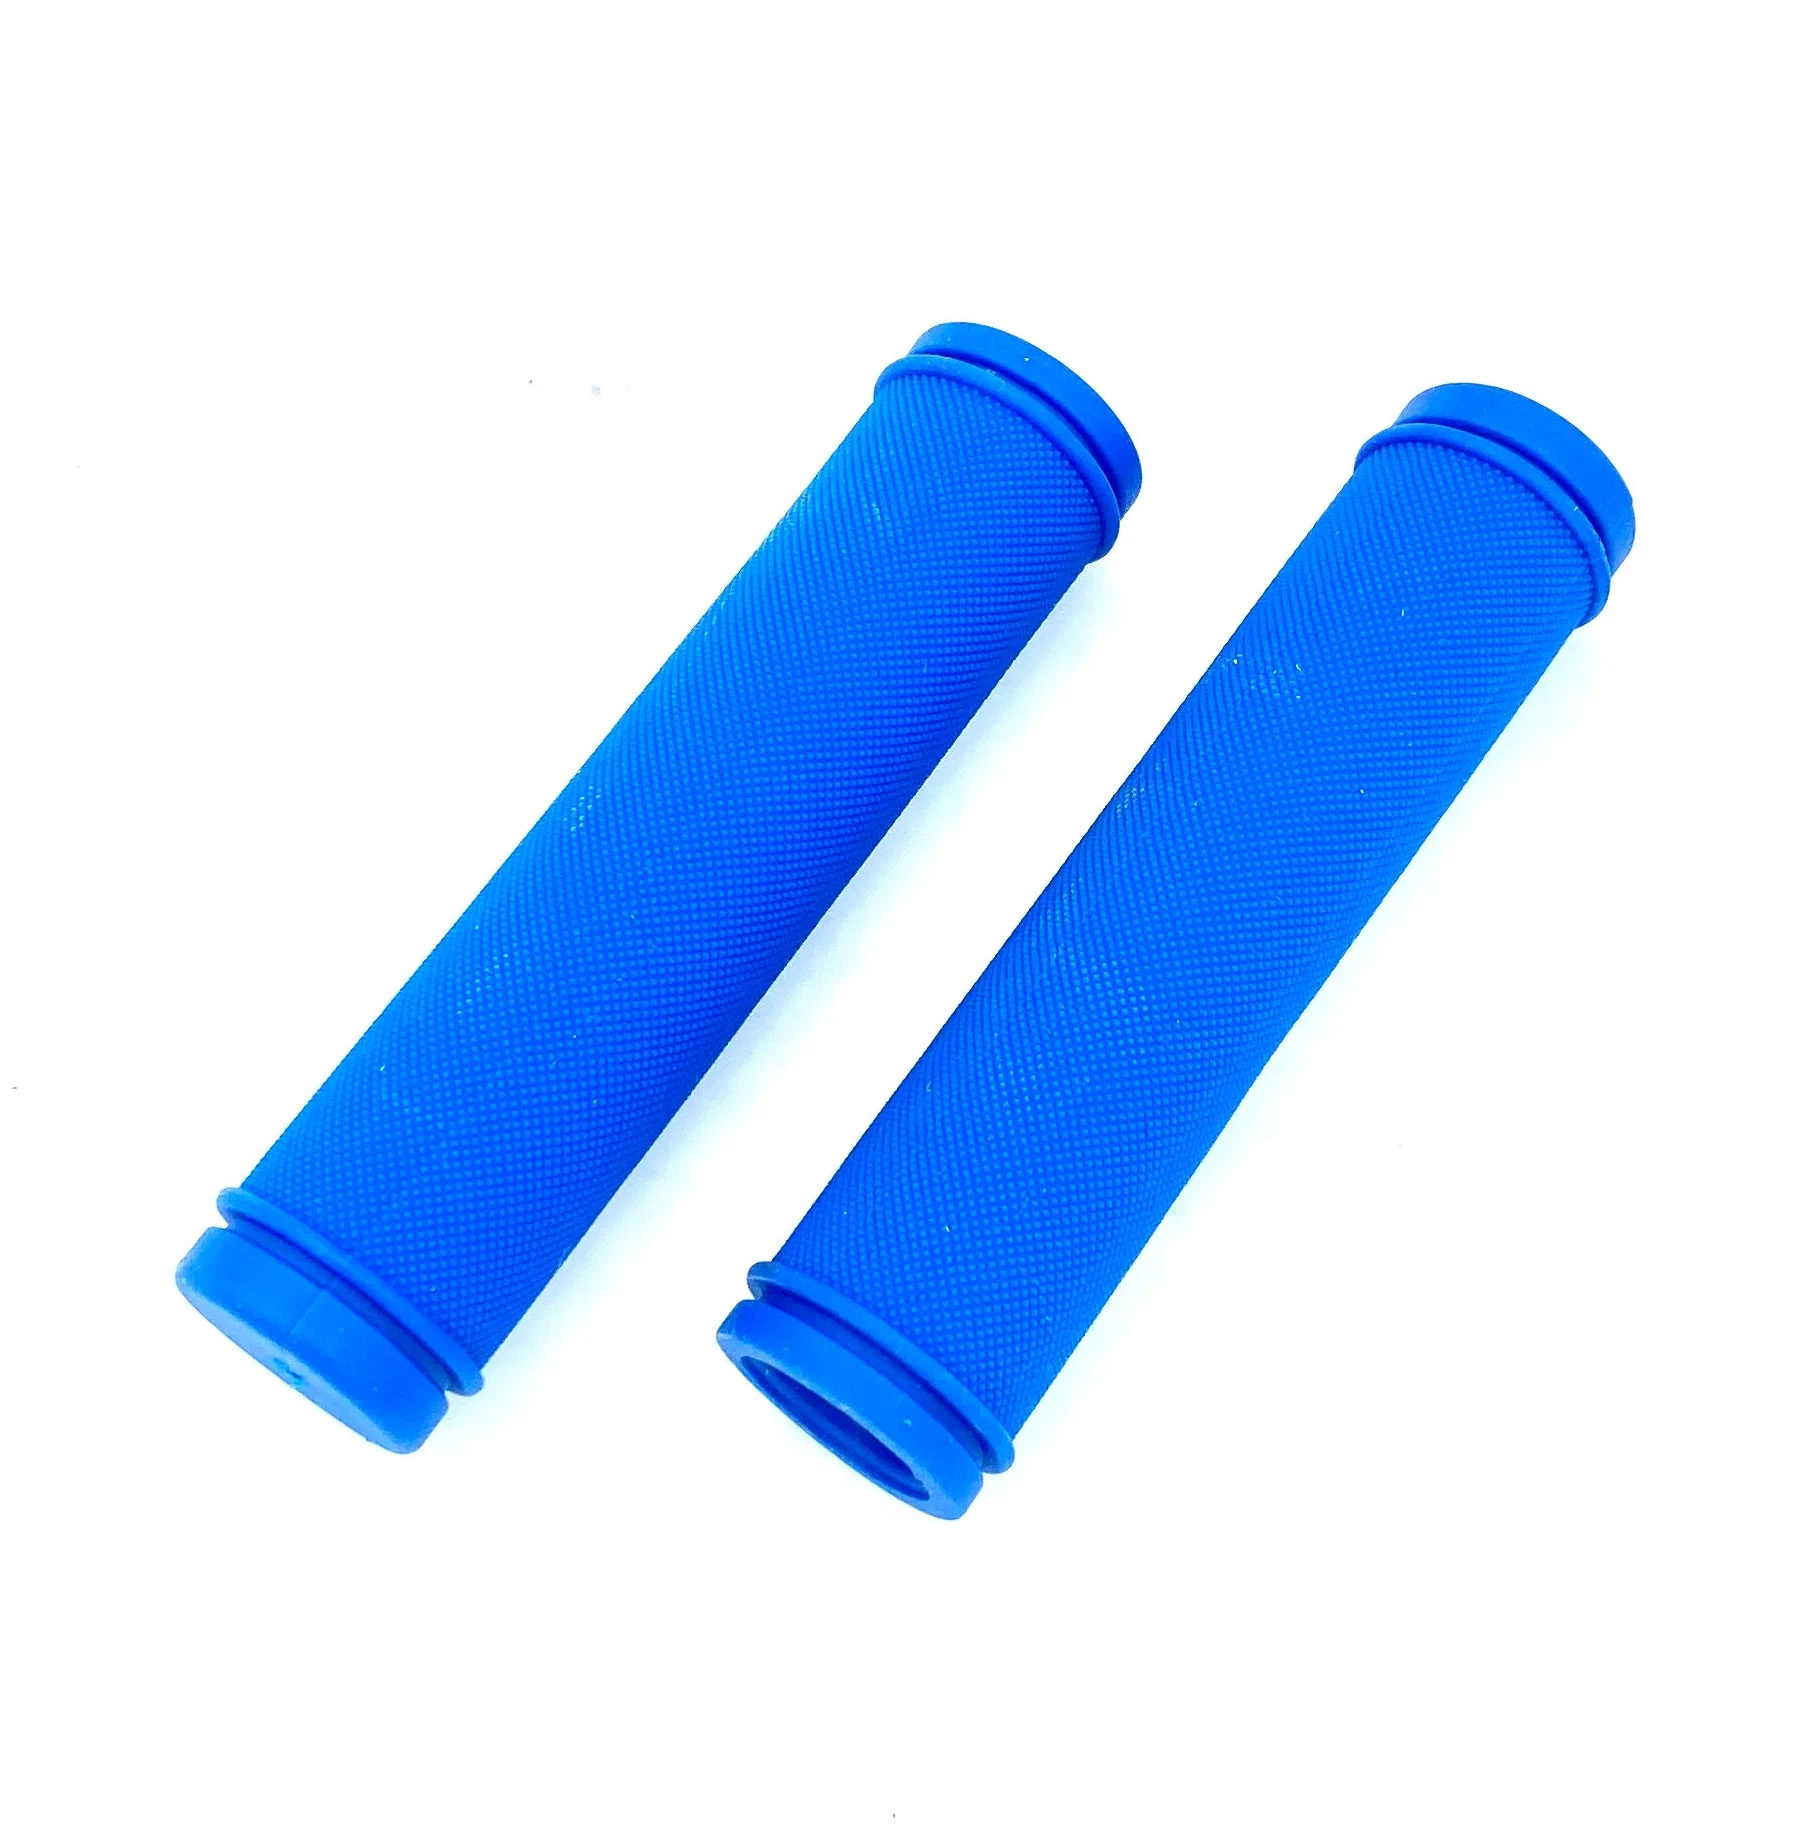 Ручки-грипсы велосипедные С98-130 3-377 резиновые 130мм синие CLARKS